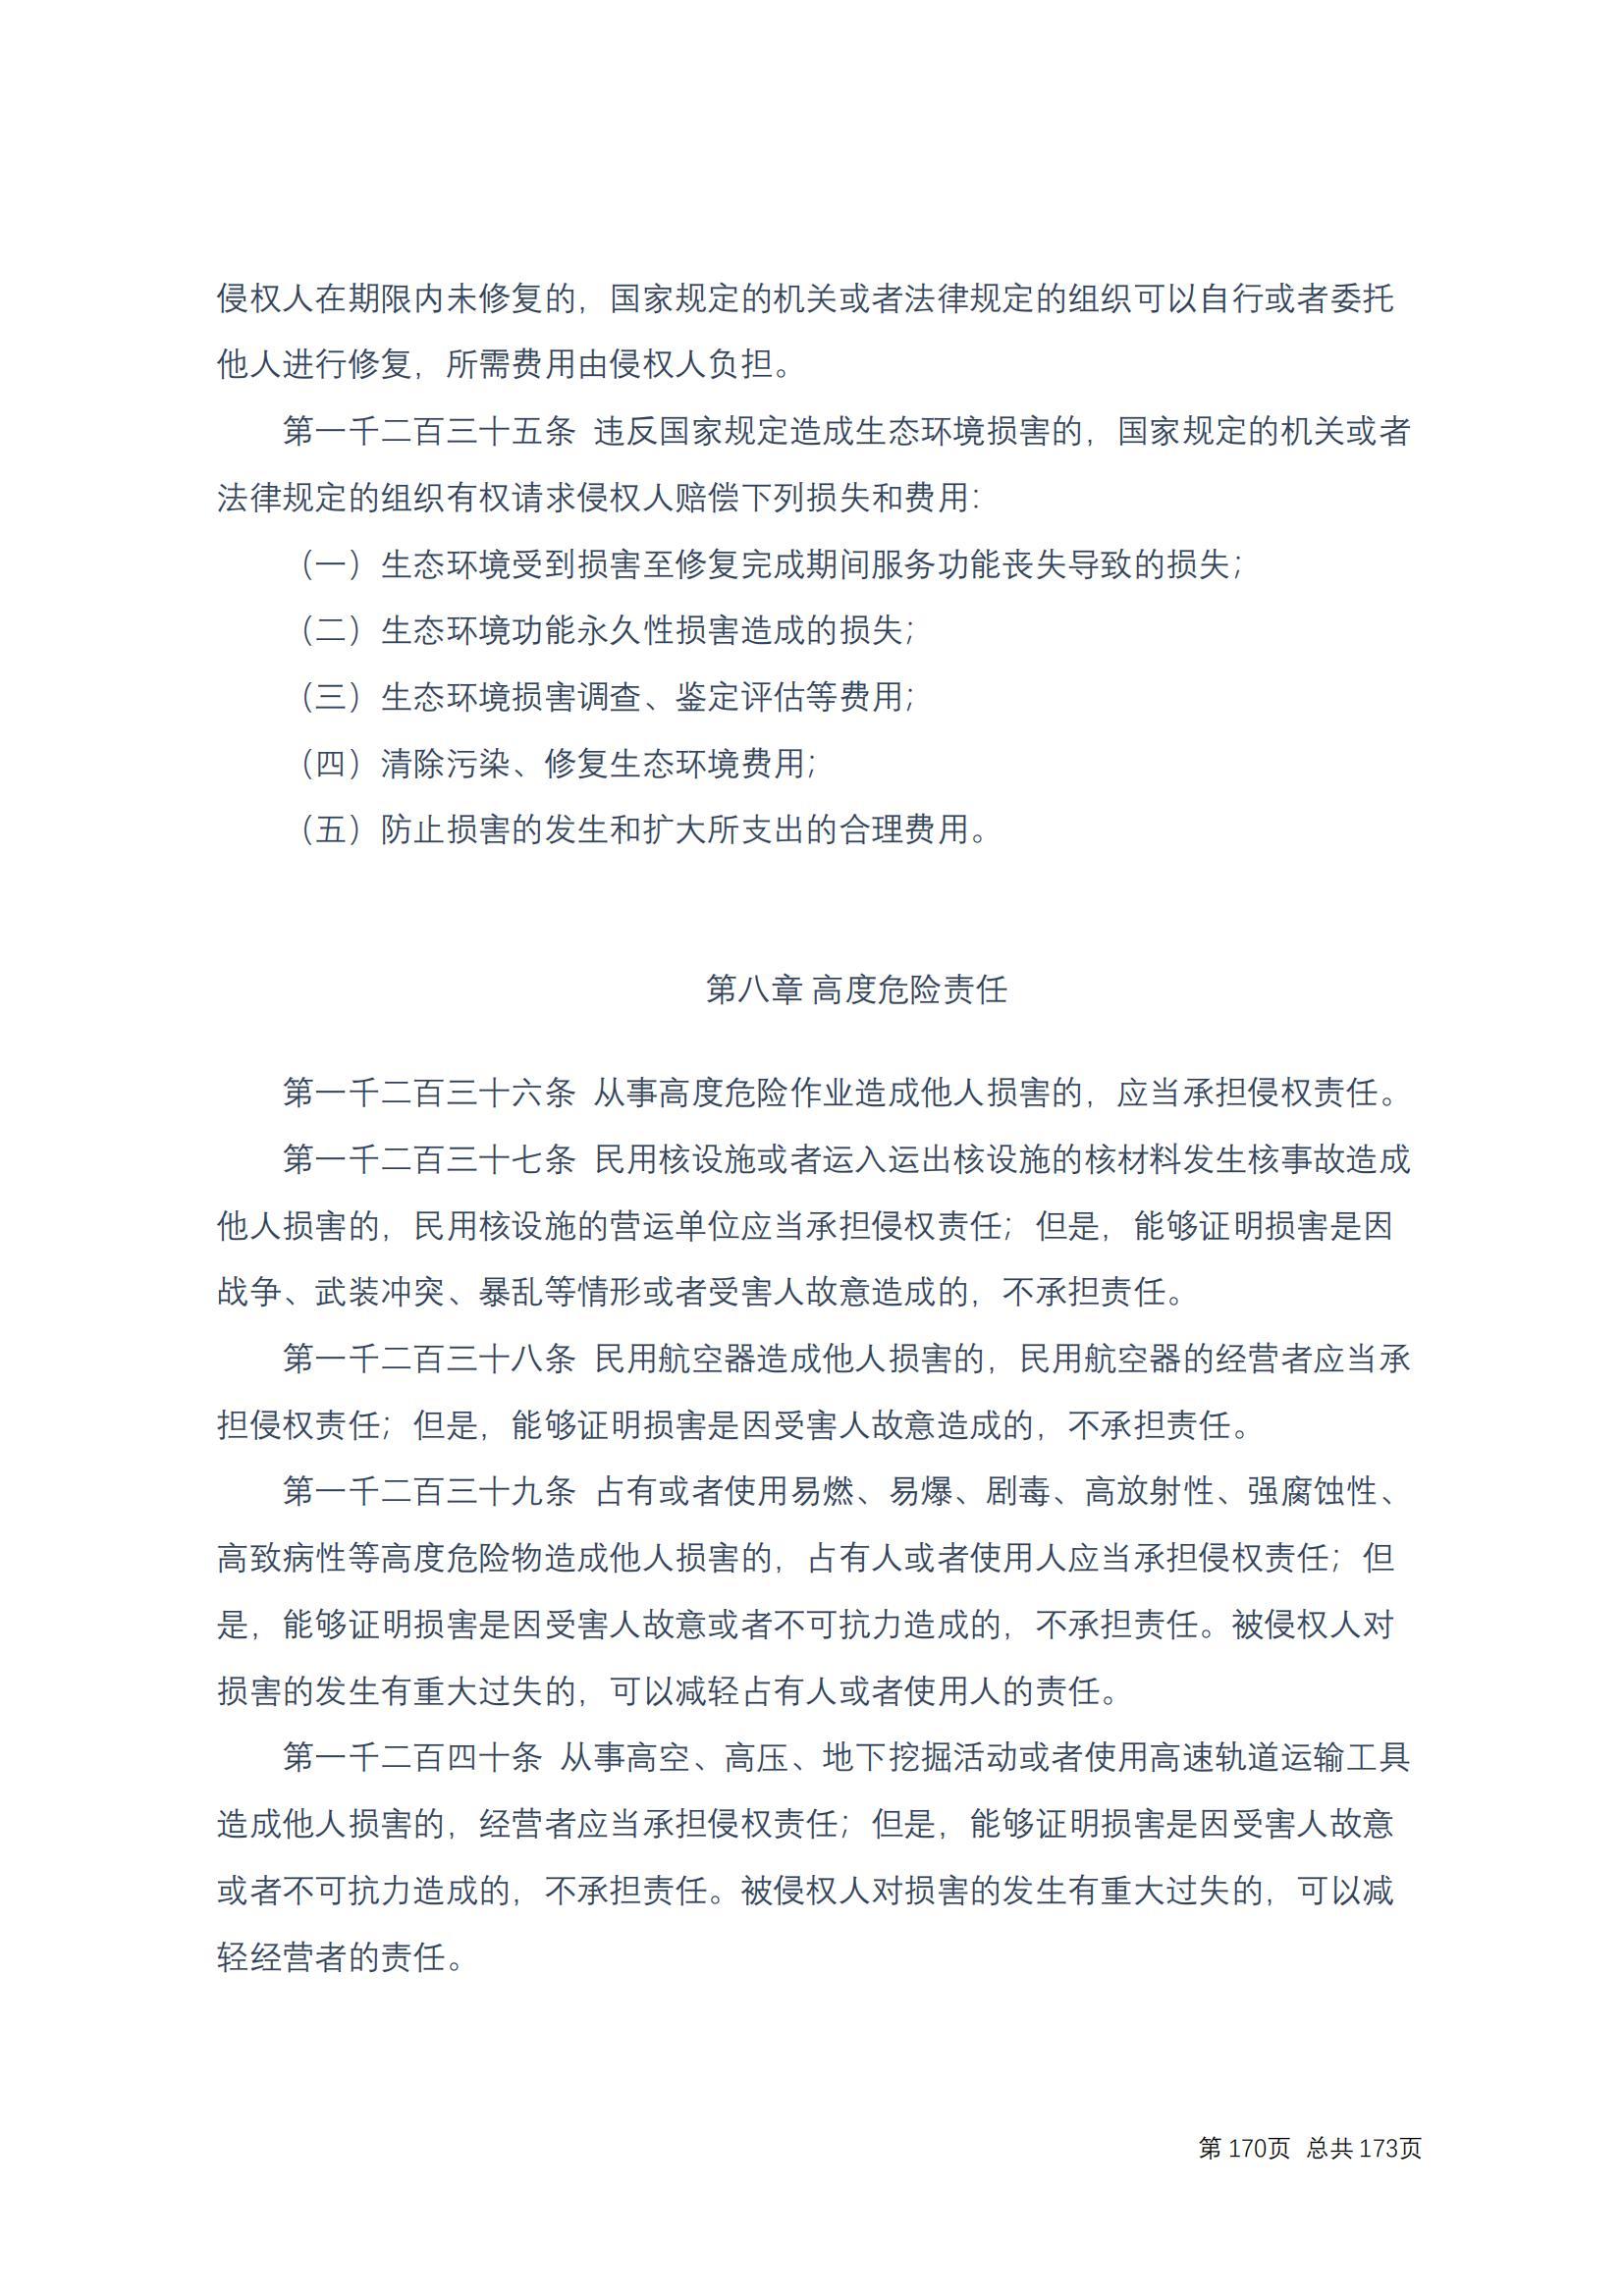 中华人民共和国民法典 修改过_169